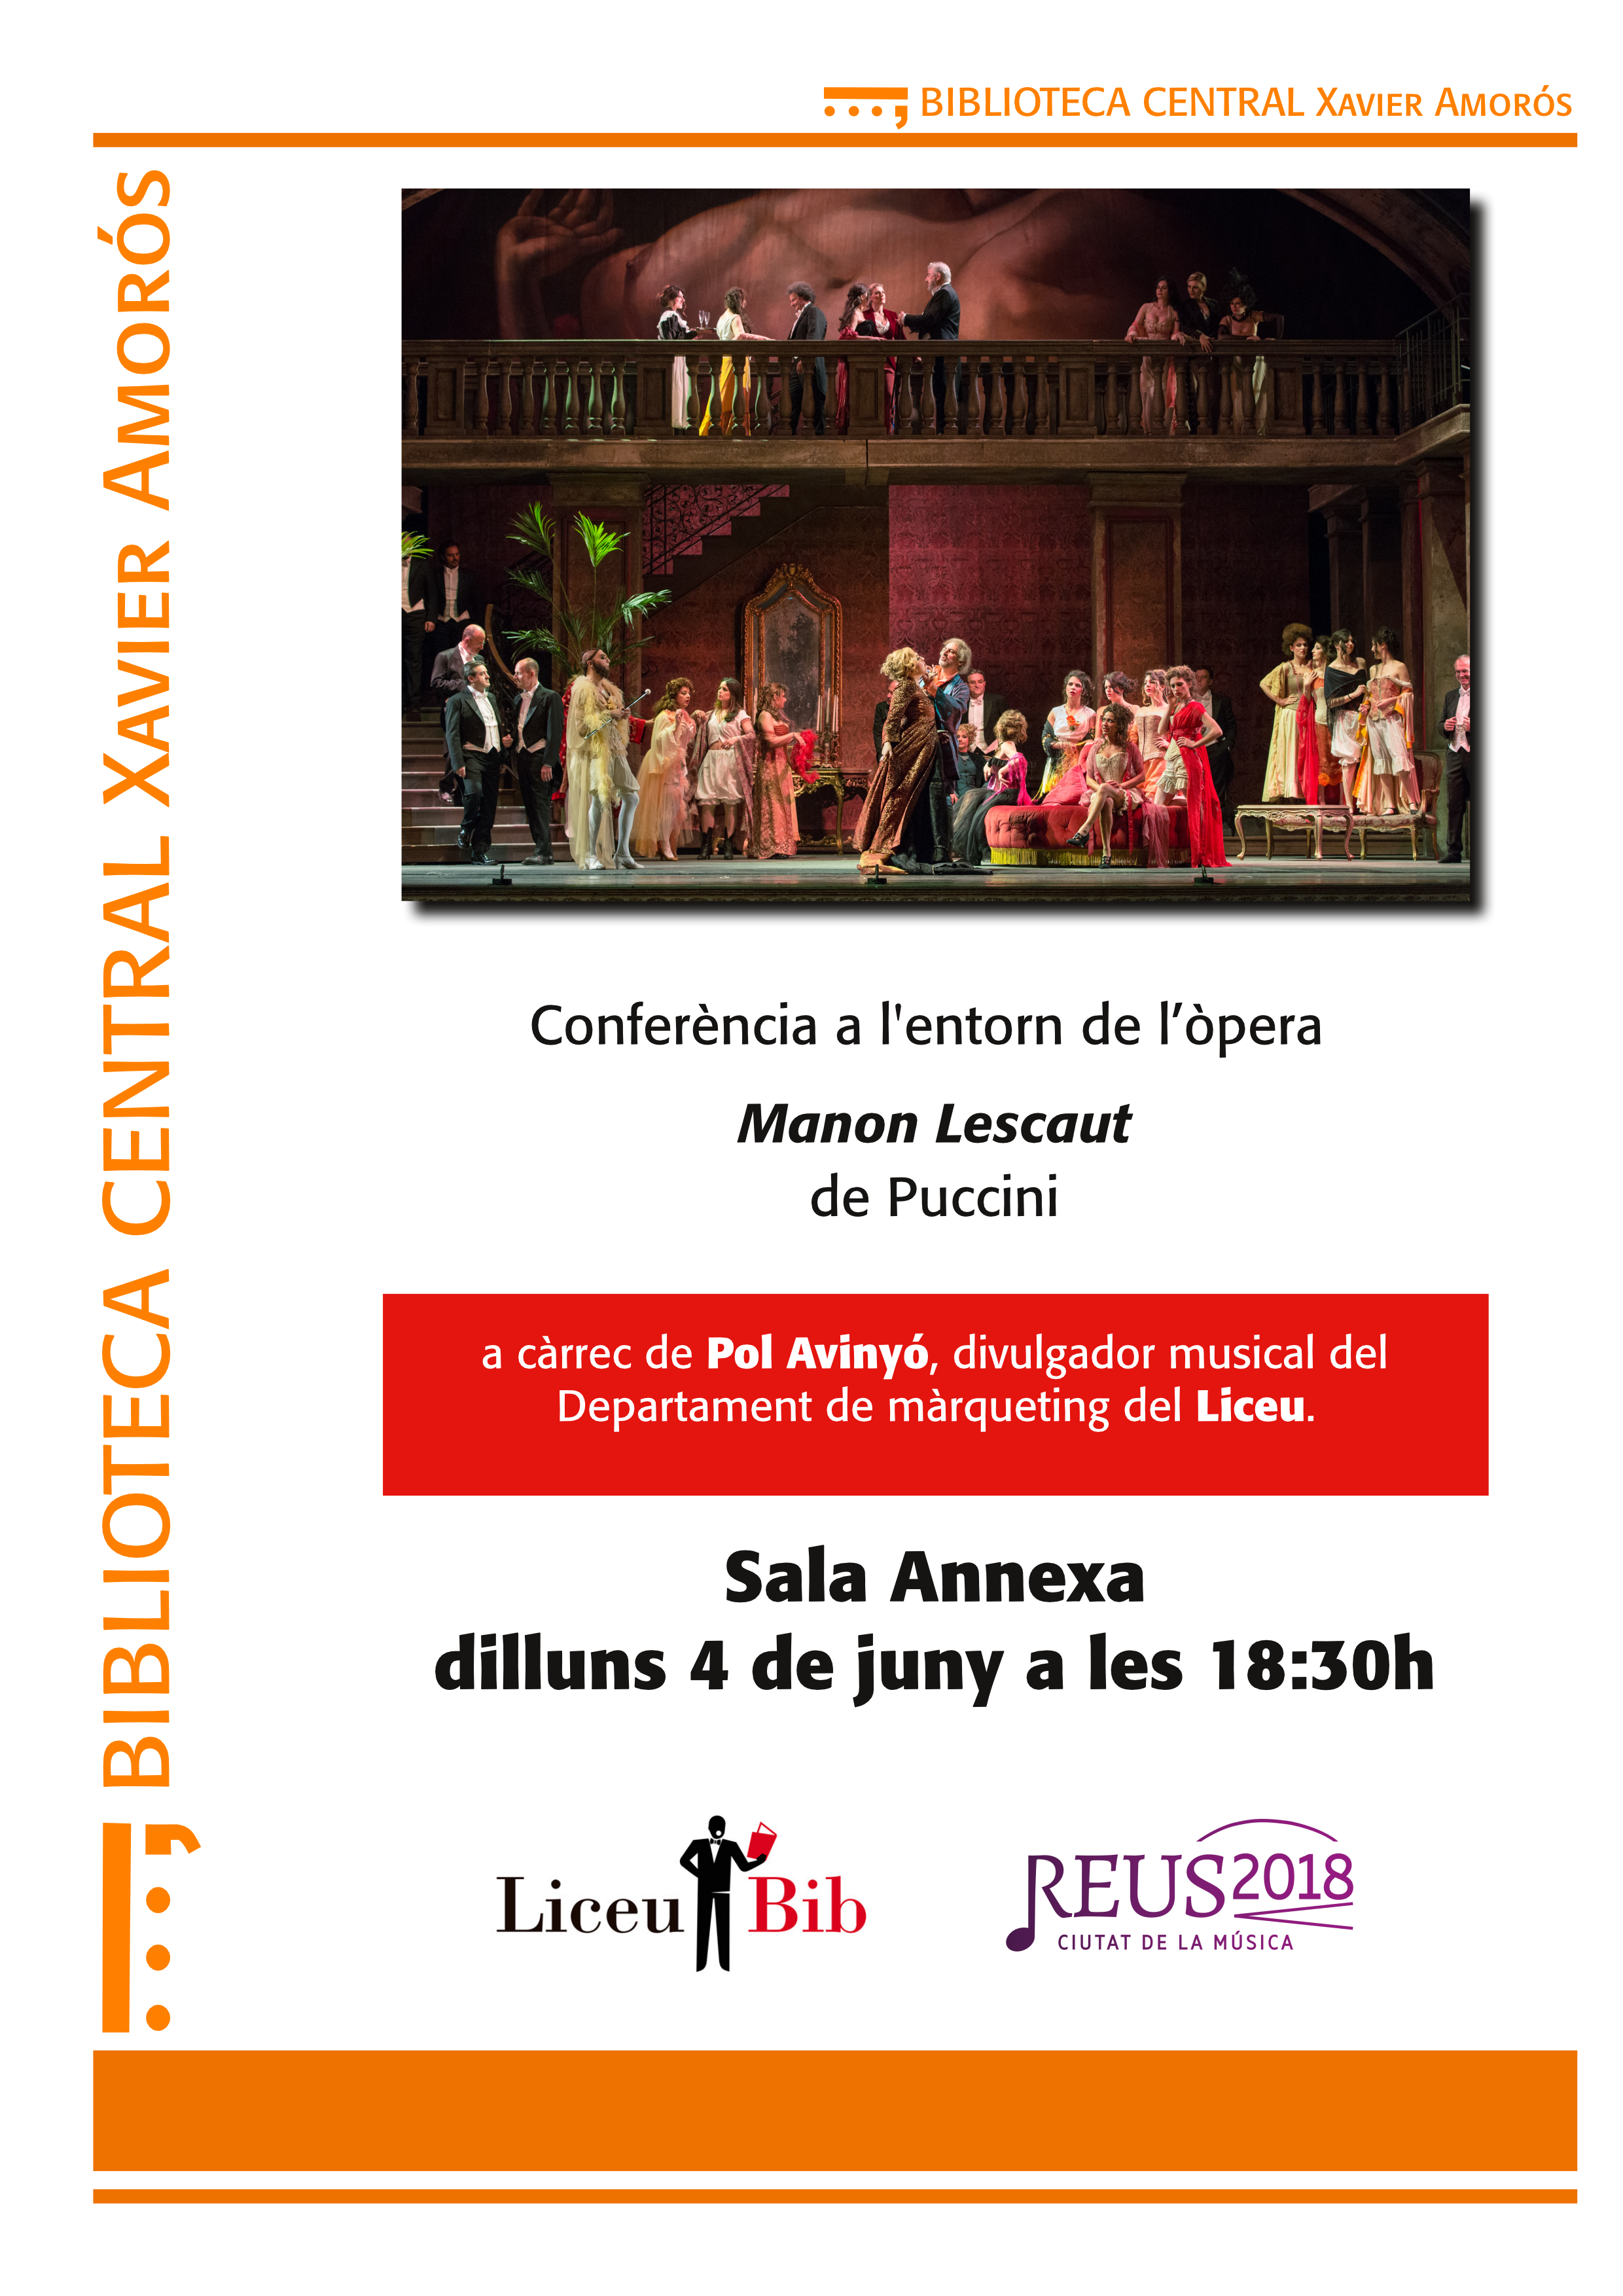 Conferència a l'entorn de l’òpera Manon Lescaut, de Puccini